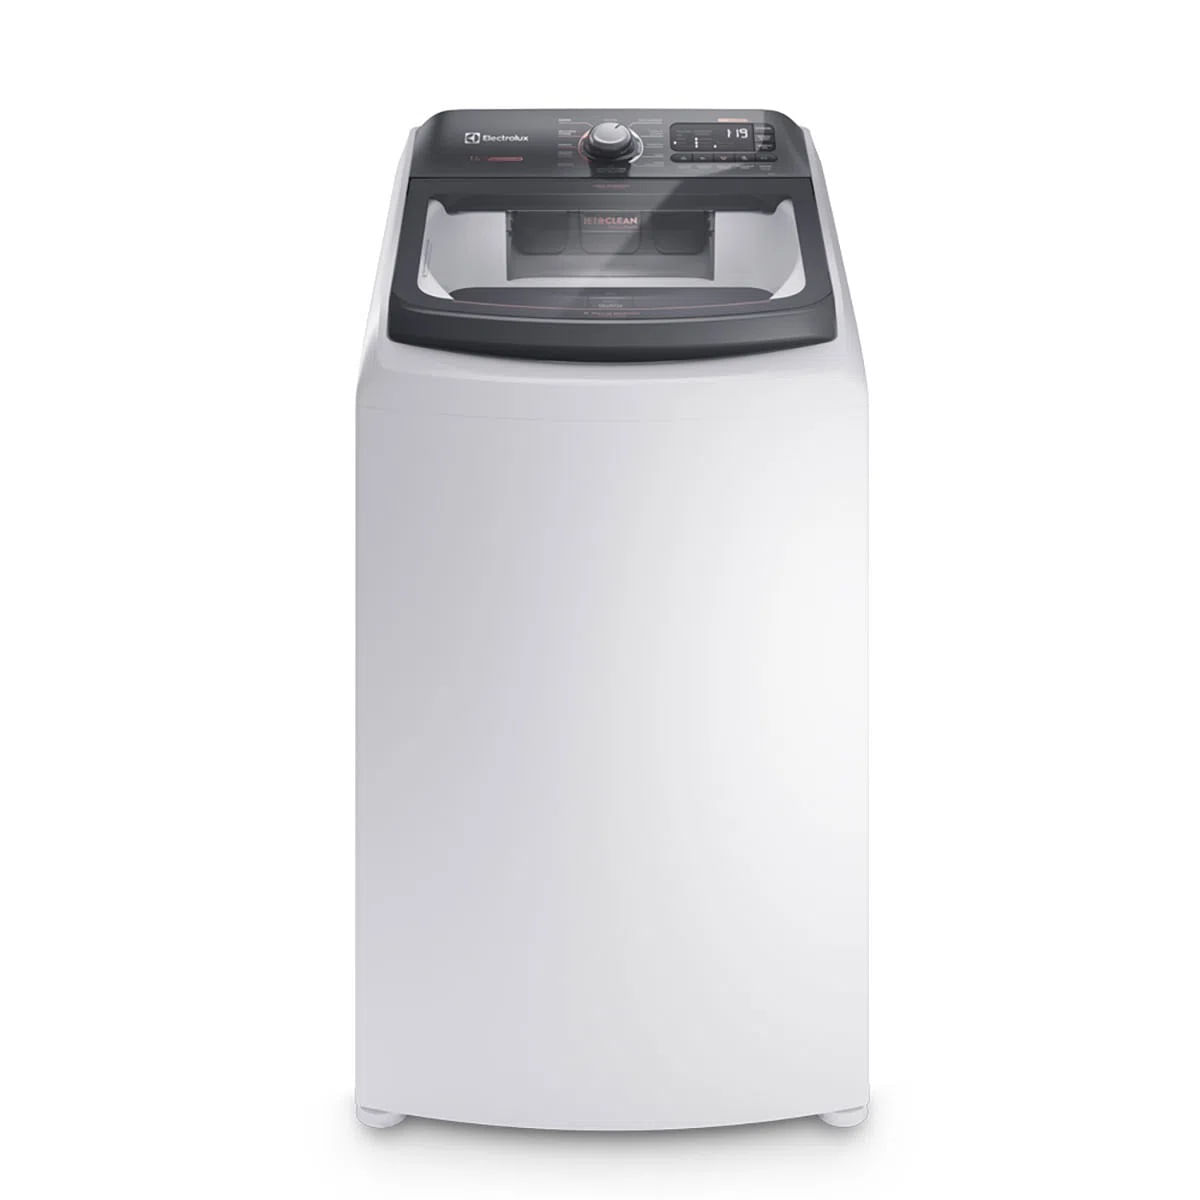 maquina-de-lavar-14kg-electrolux-premium-care-com-cesto-inox-jet-clean-e-time-control-lec14-220v-1.jpg